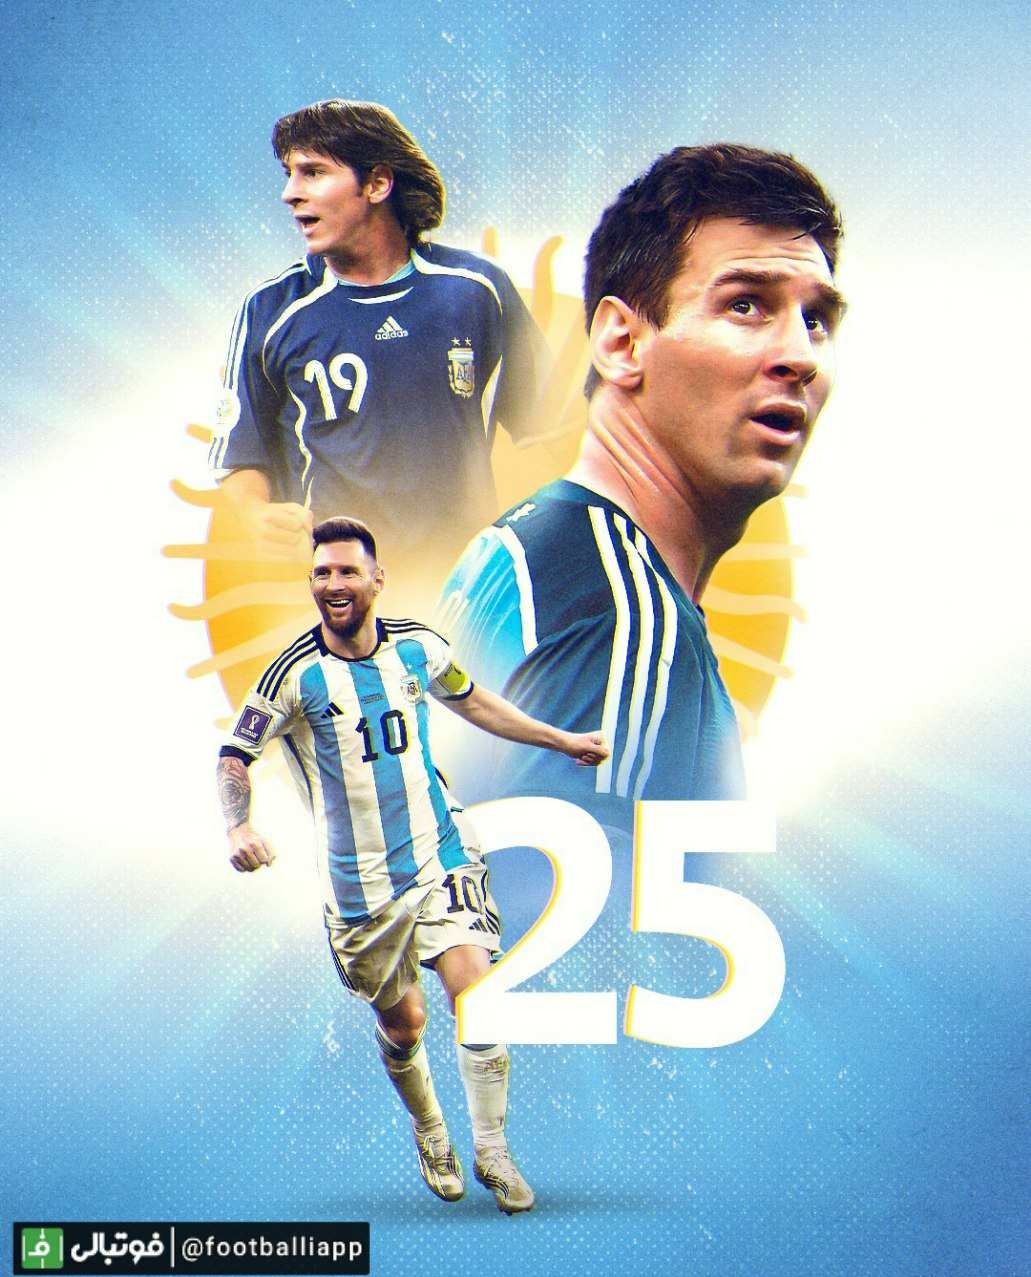 لیونل مسی با قرار گرفتن در ترکیب آرژانتین، امشب رکورد حضور یک بازیکن در جام جهانی را می شکند و به 26 بازی می رسد. او در بازی نیمه نهایی، به رکورد 25 بازی لوتار ماتئوس آلمانی رسیده بود.